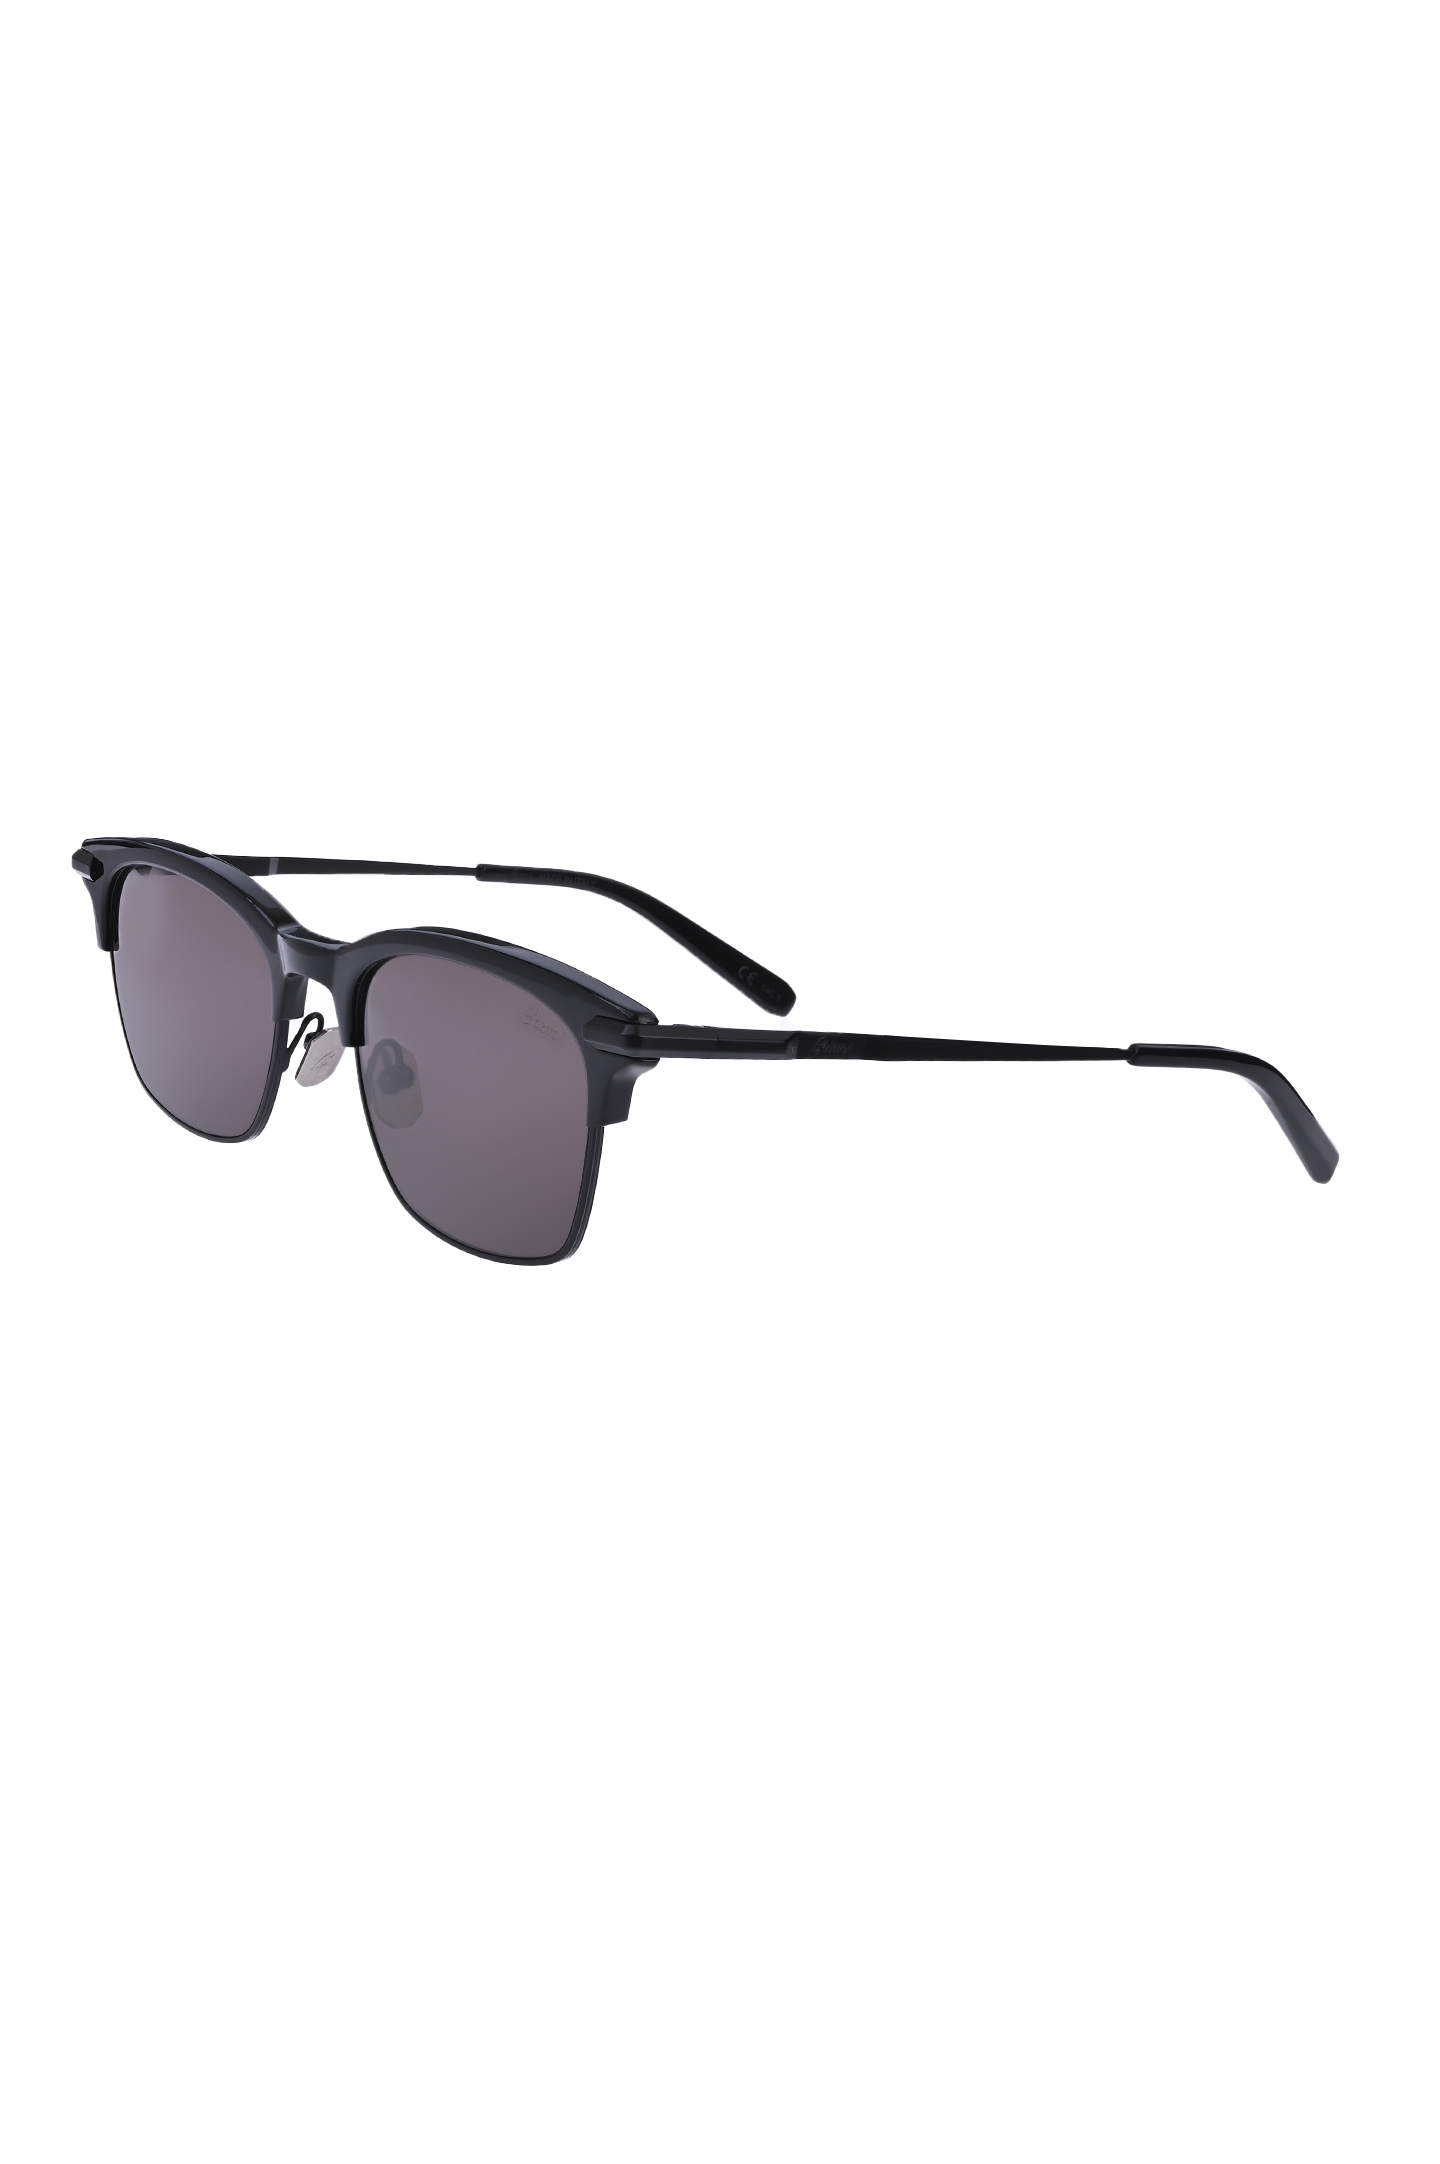 Солнцезащитные очки BRIONI ODE600 P3ZAC, цвет: Черный, Мужской